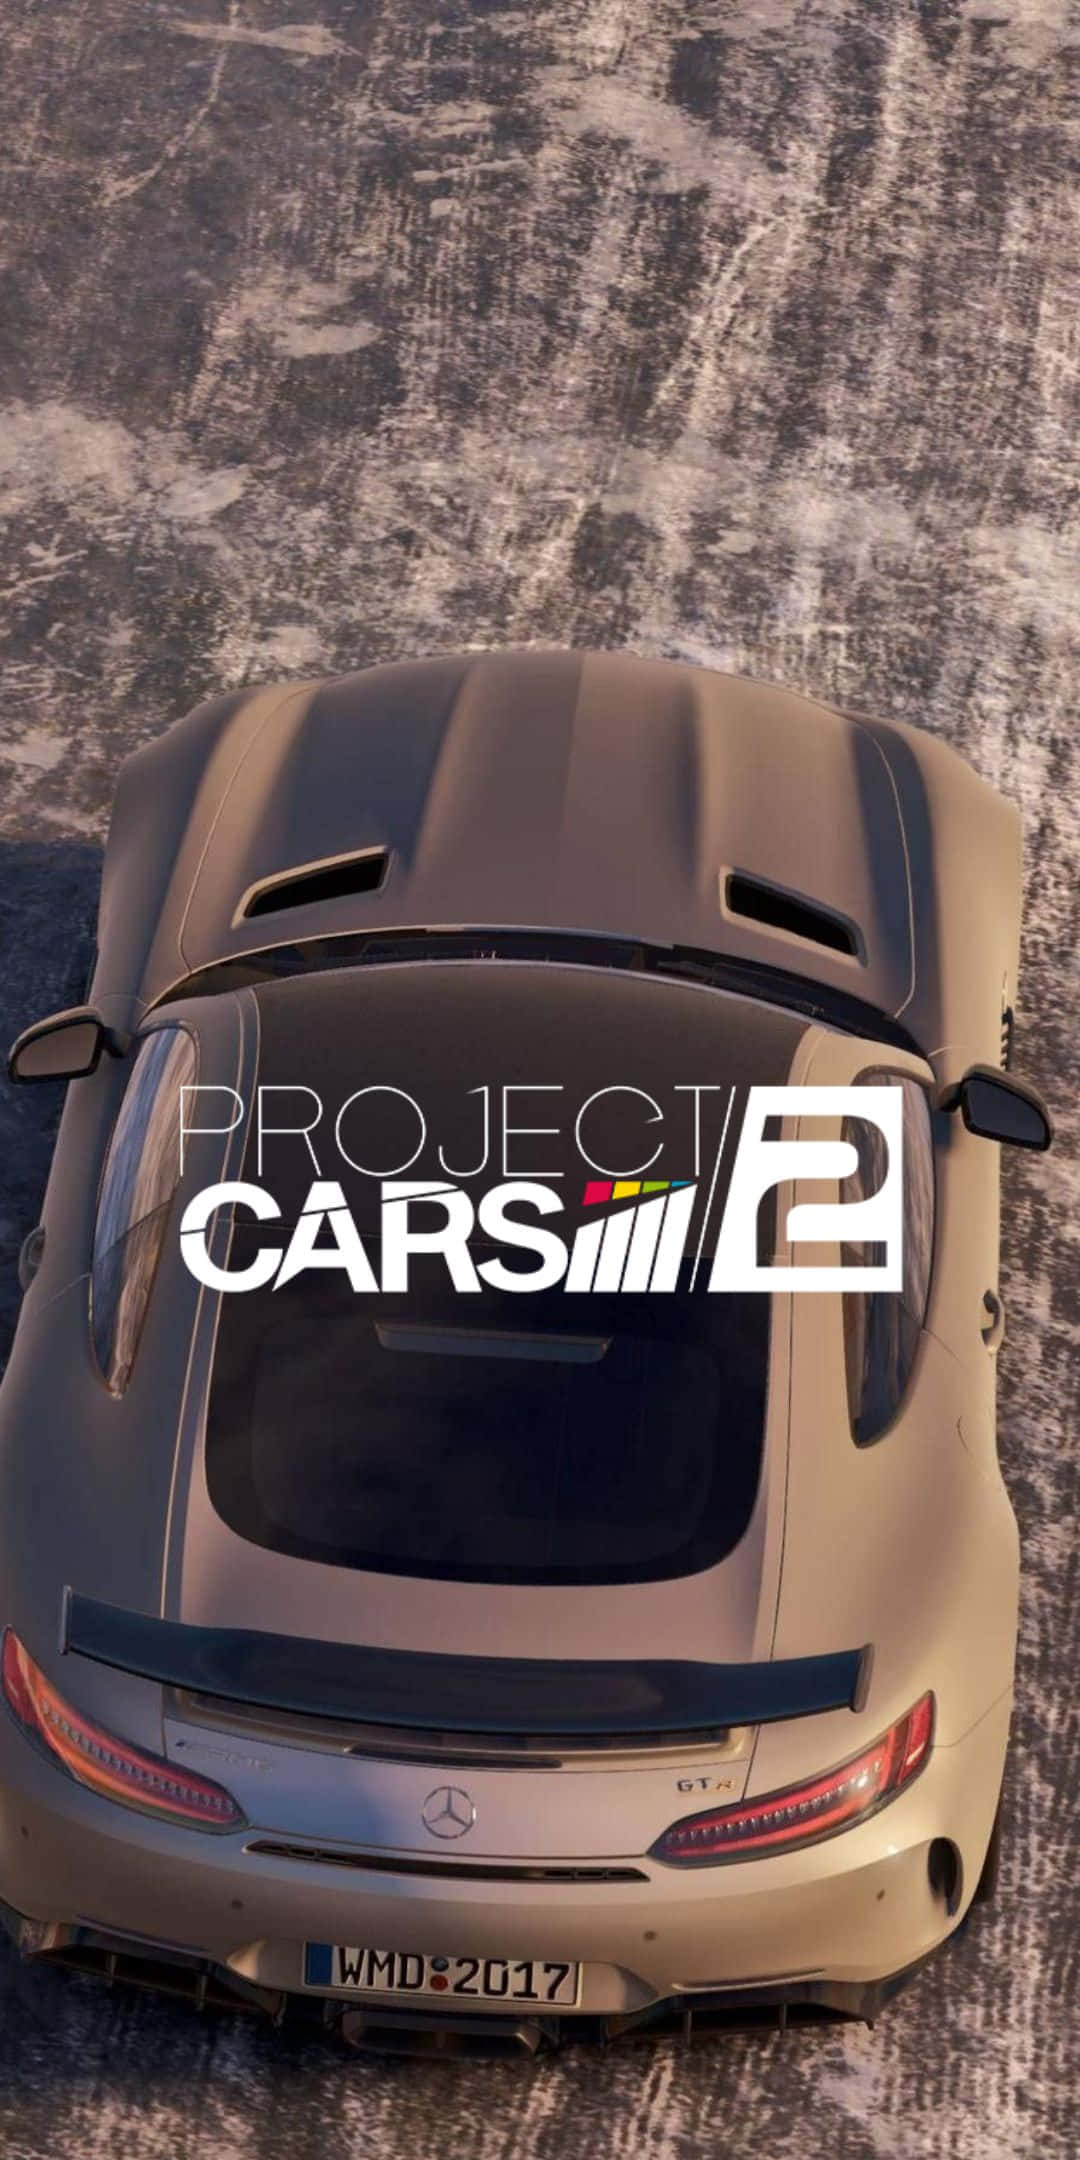 Fondode Pantalla De La Edición 2016 En Color Plata Del Mercedes Amg Y El Pixel 3 En El Juego Project Cars 2.